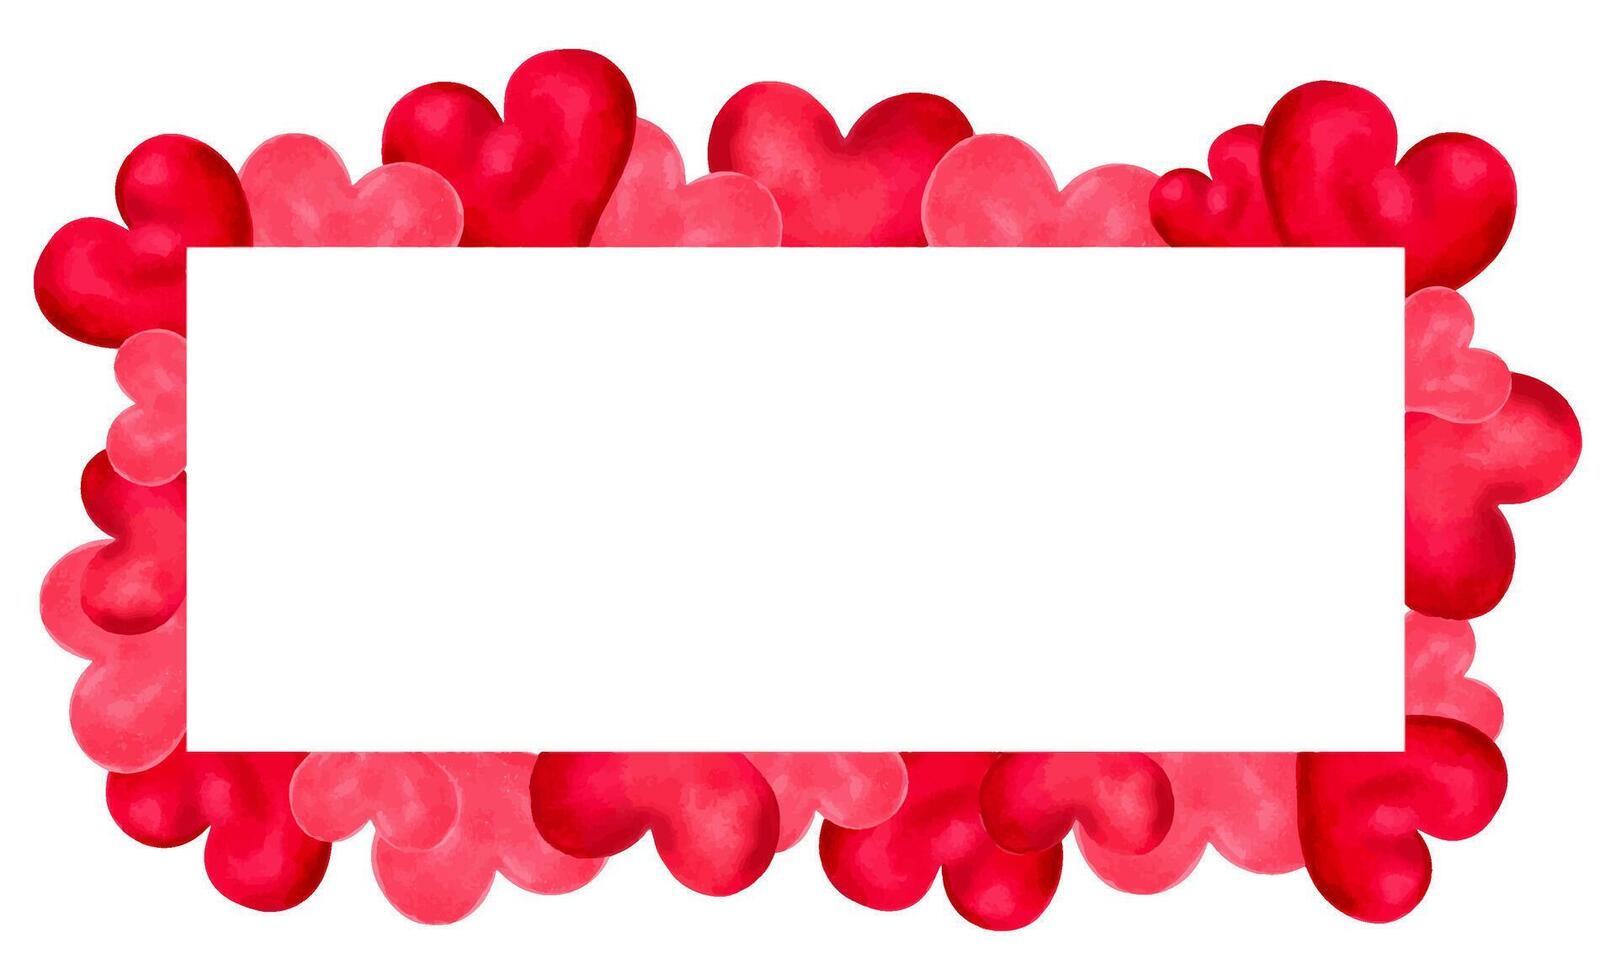 San Valentín día marco con sitio para texto.rectangular modelo hecho de rosado rojo corazones.banner para diseño decoración para de la madre día,amigos,novias,solteros día. vector